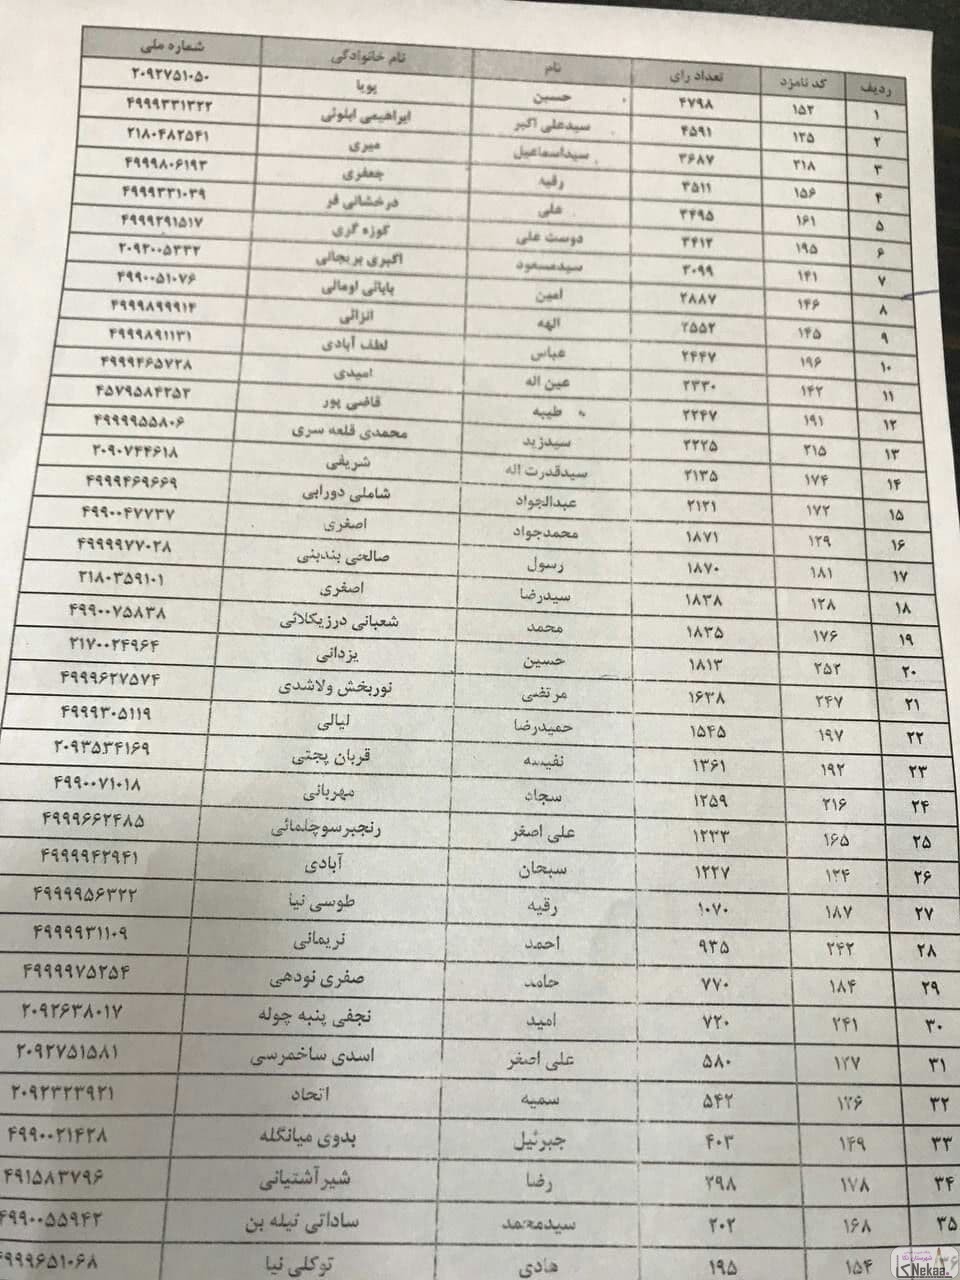 نتایج نهایی و تعداد آرای انتخابات شورای شهر نکا